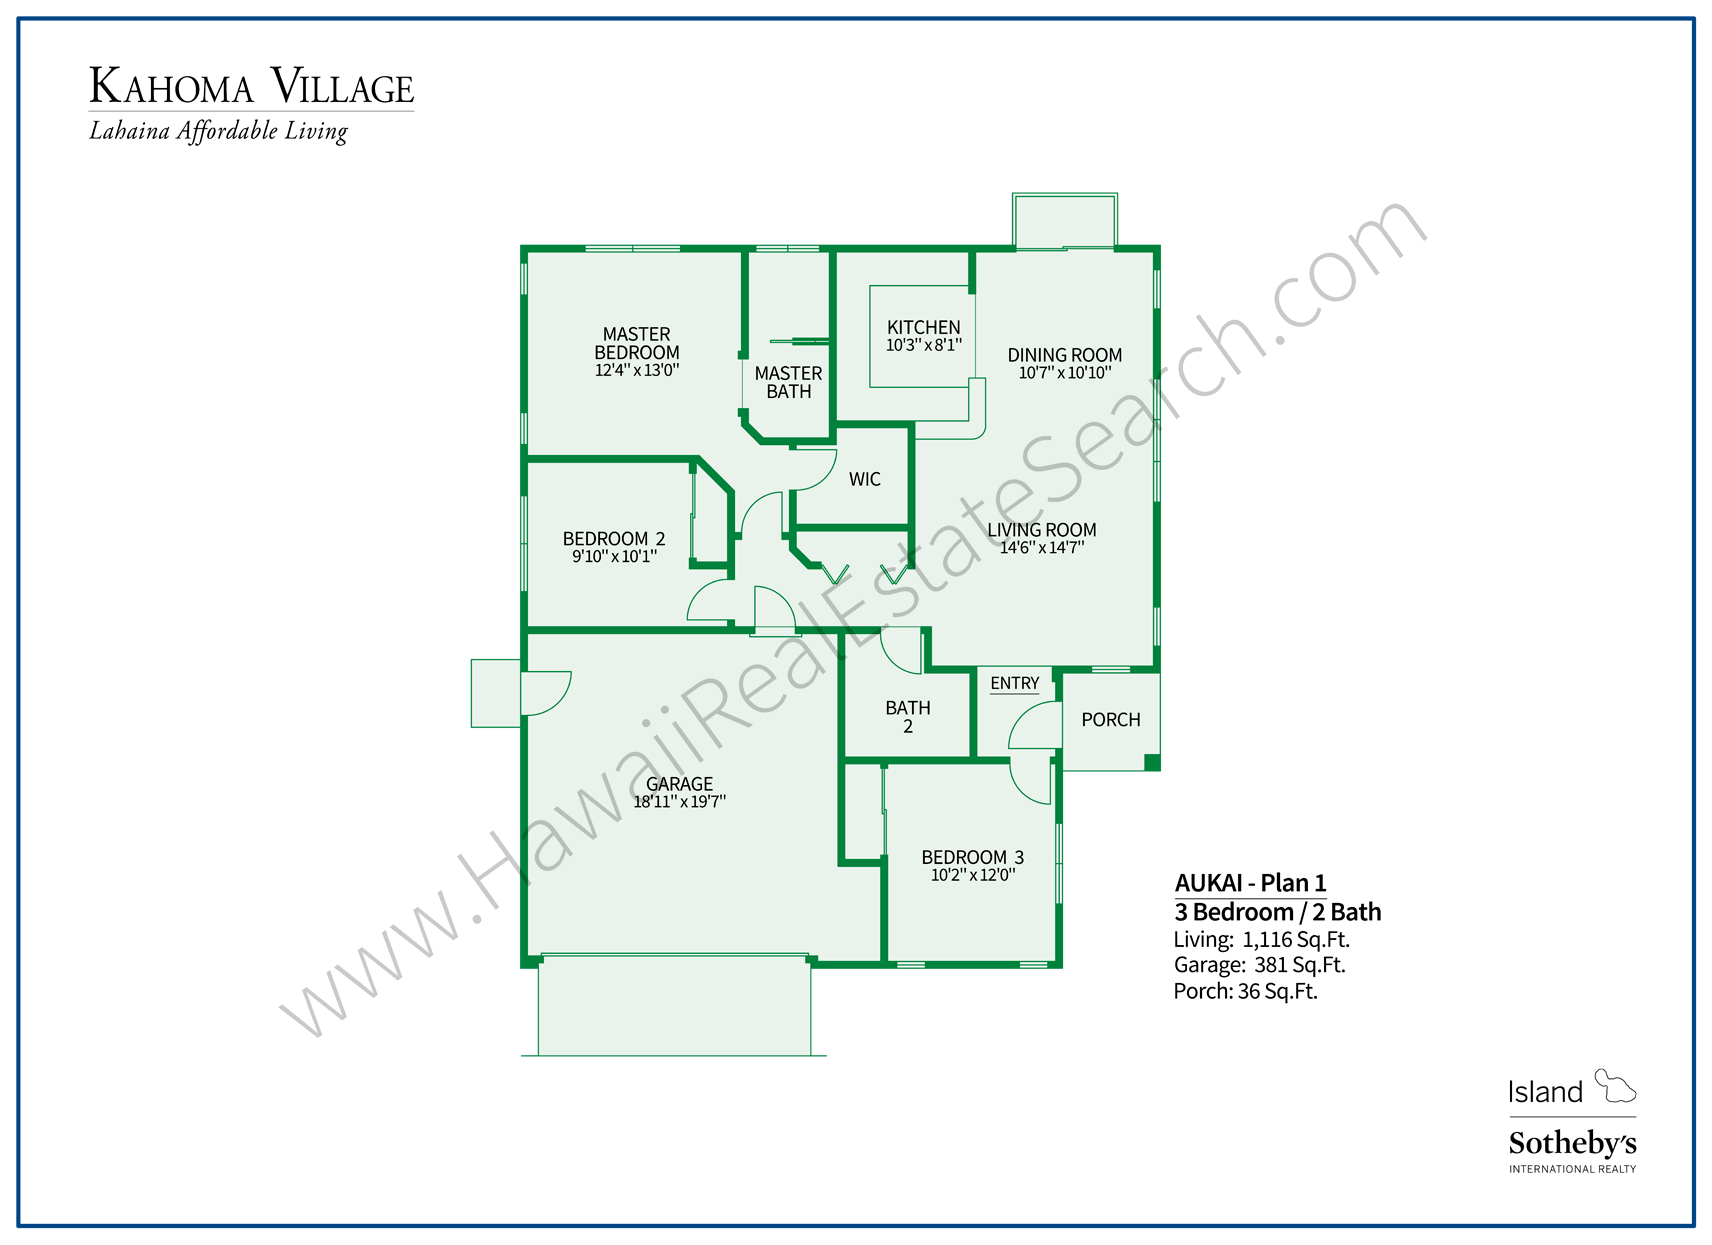 Kahoma Village Floor Plan 1